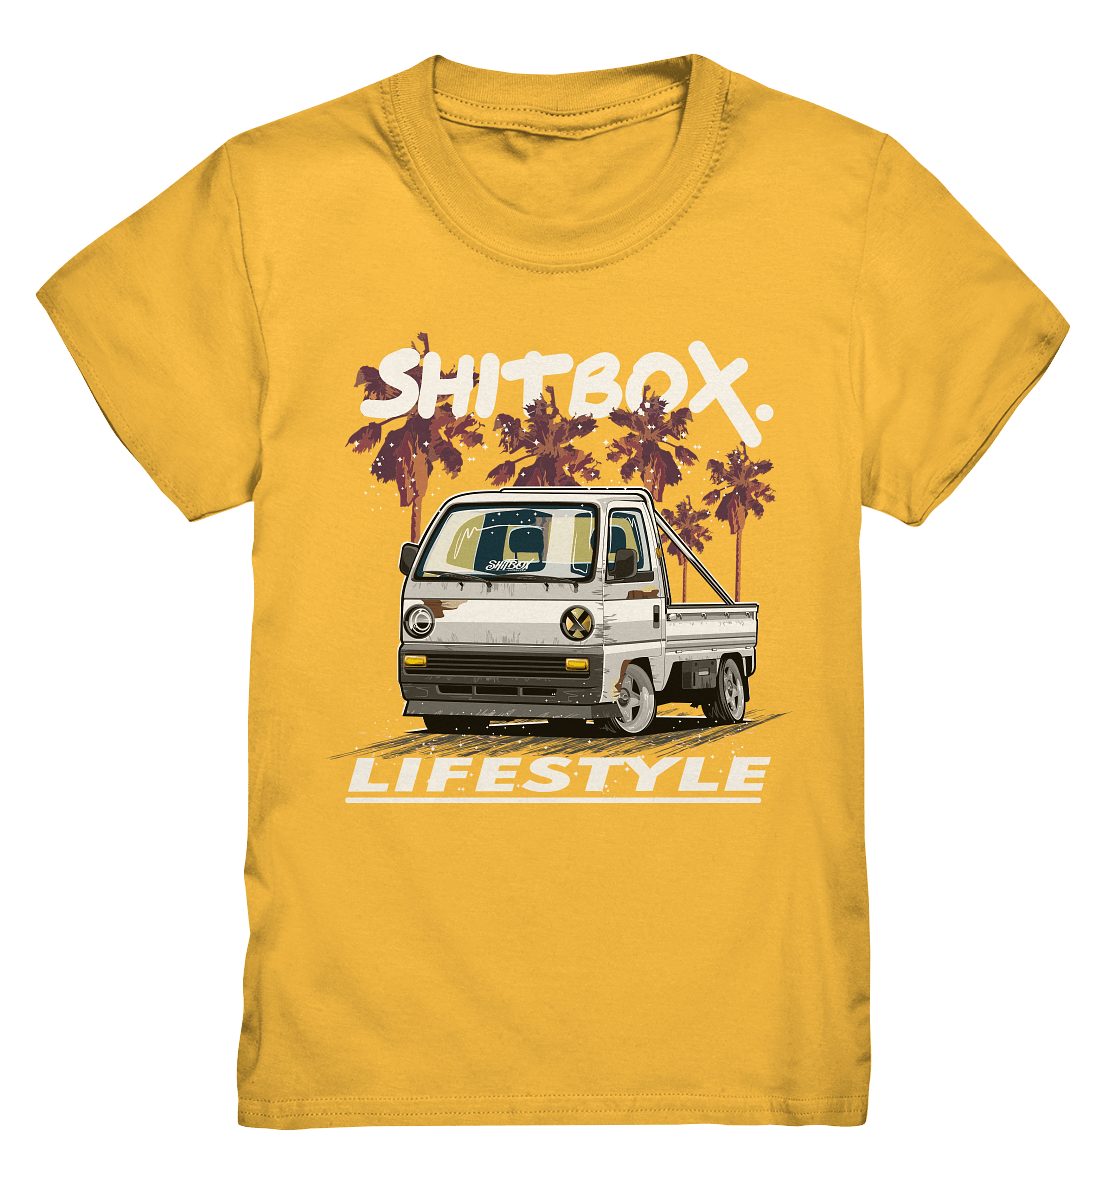 Acty Kei Truck - Kids Premium Shirt - MotoMerch.de